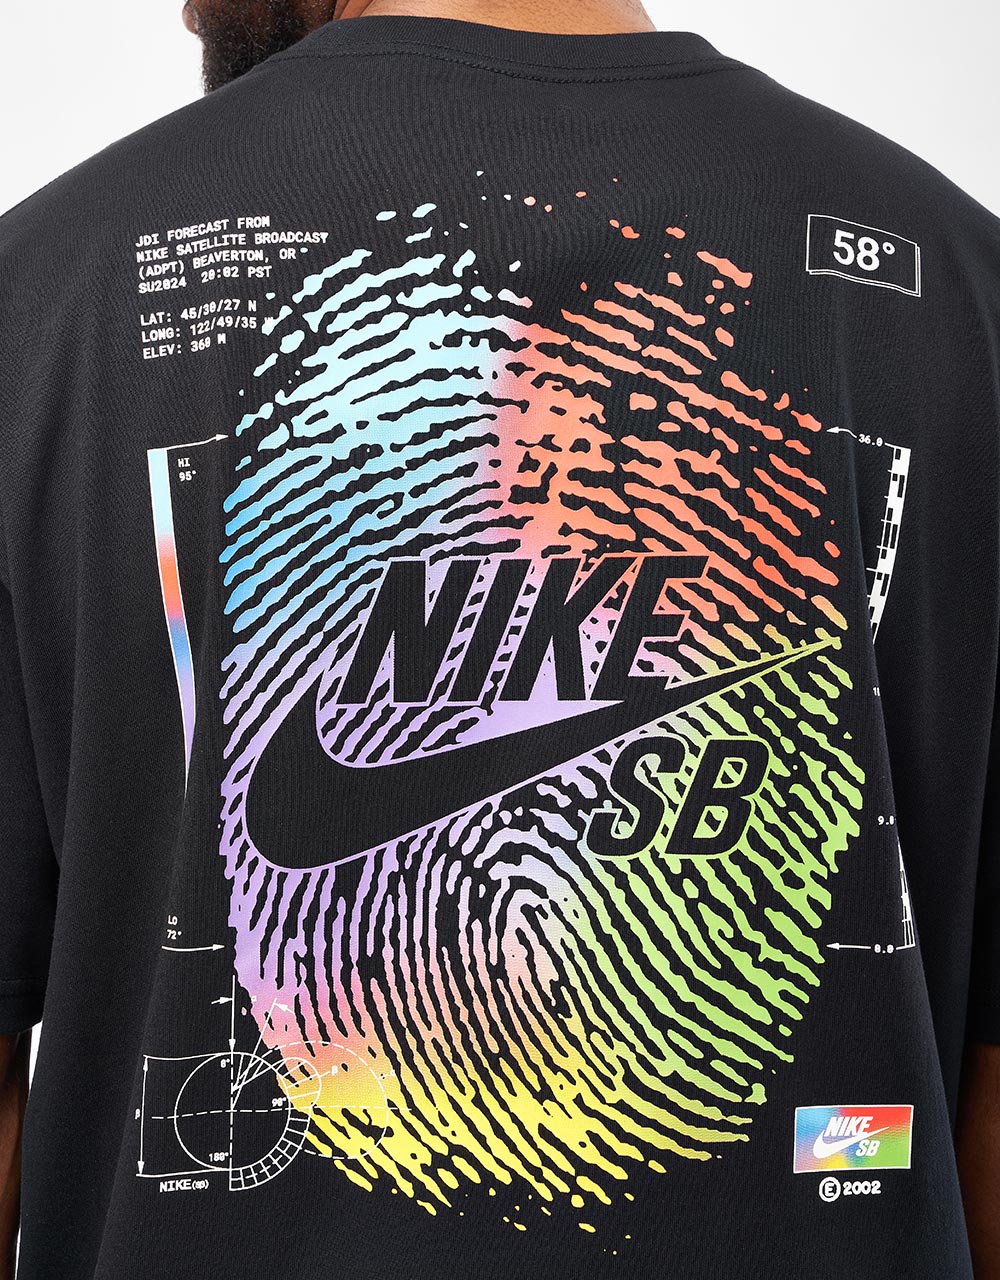 Nike SB Thumbprint T-Shirt - Black